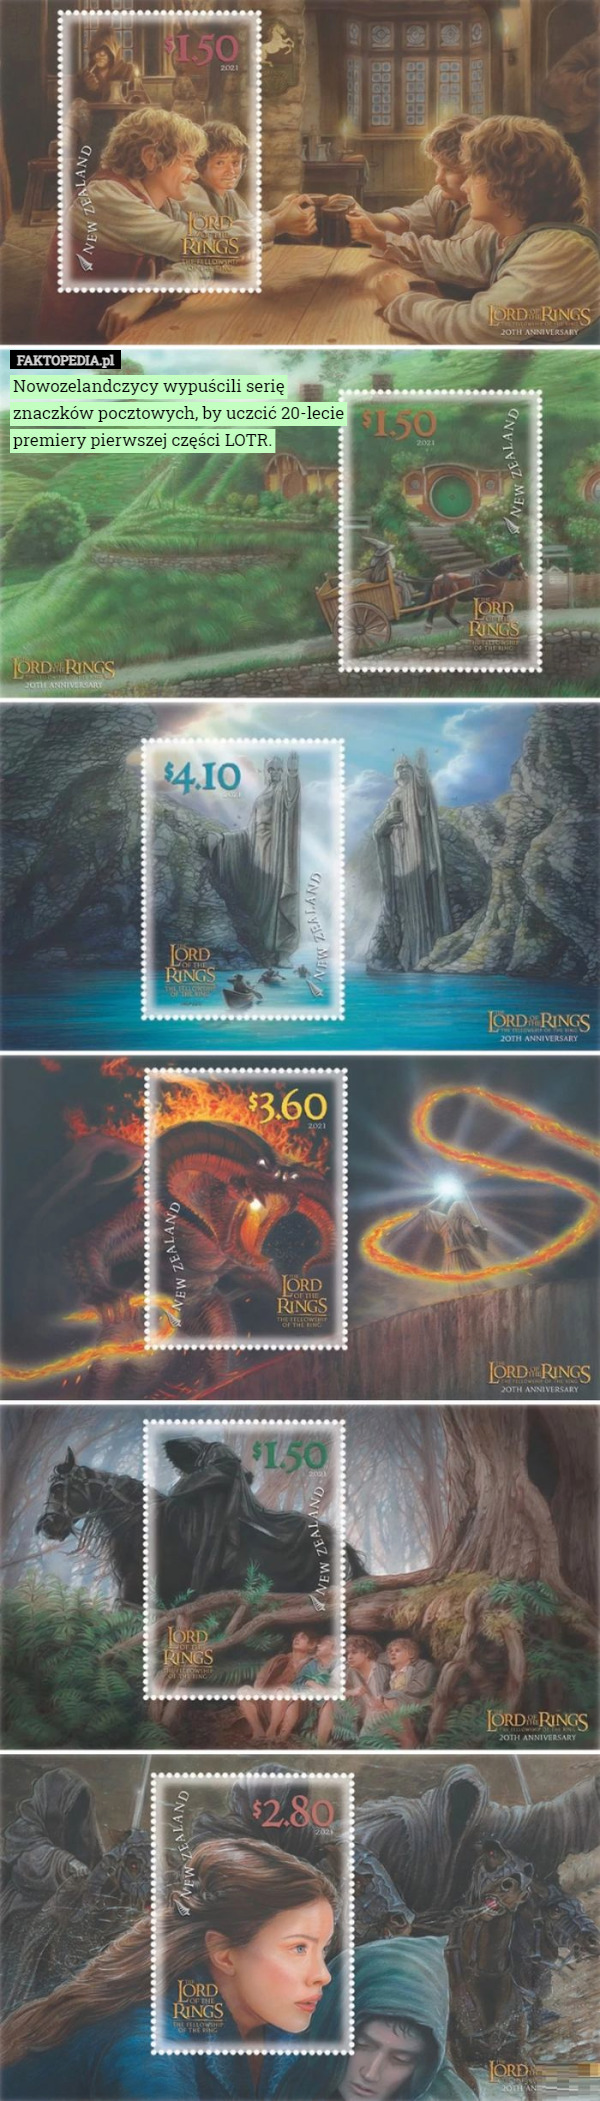 Nowozelandczycy wypuścili serię znaczków pocztowych, by uczcić 20-lecie premiery pierwszej części LOTR. 